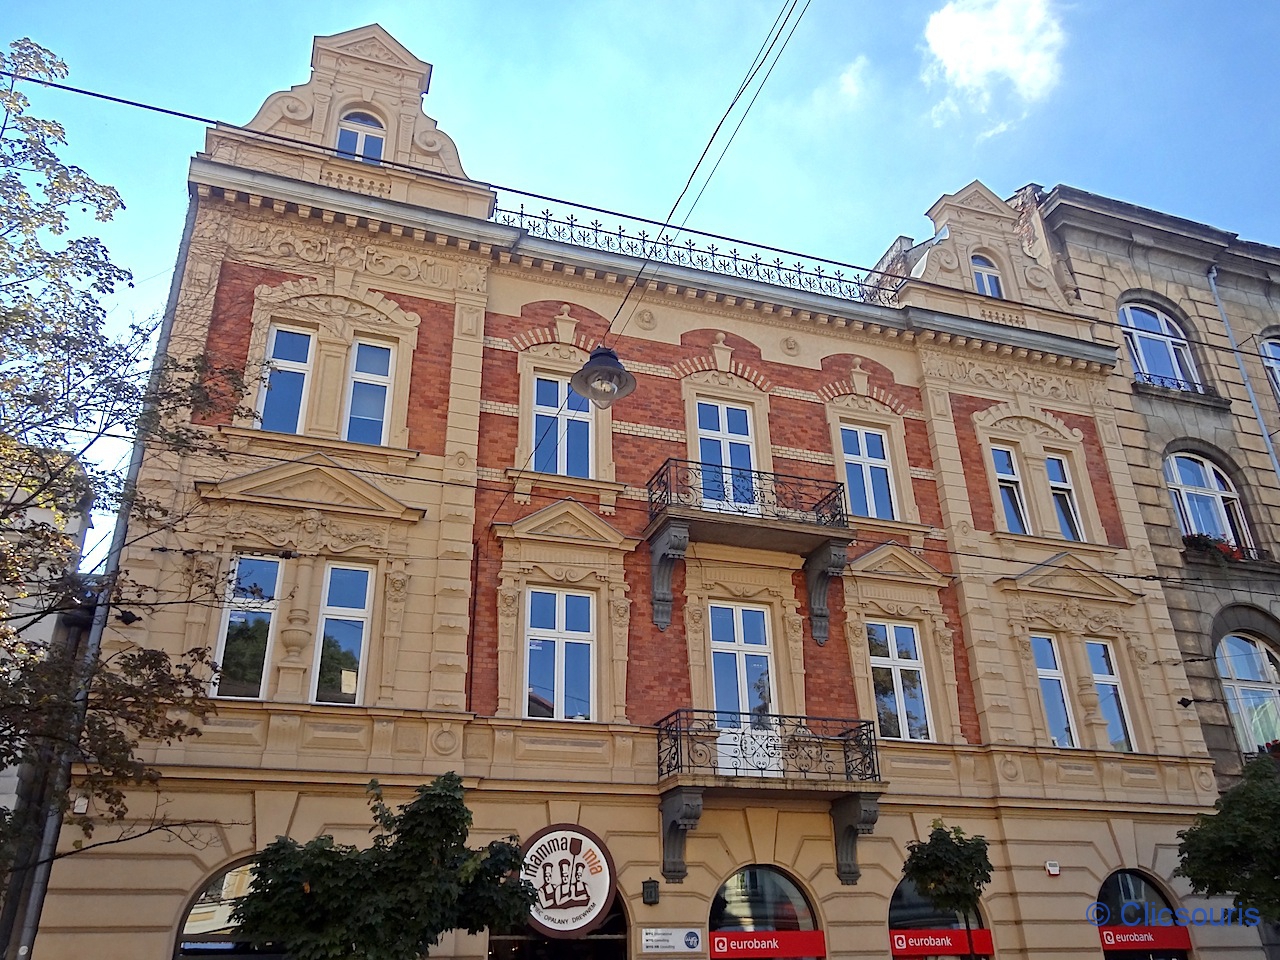 Cracovie autour de stare miasto